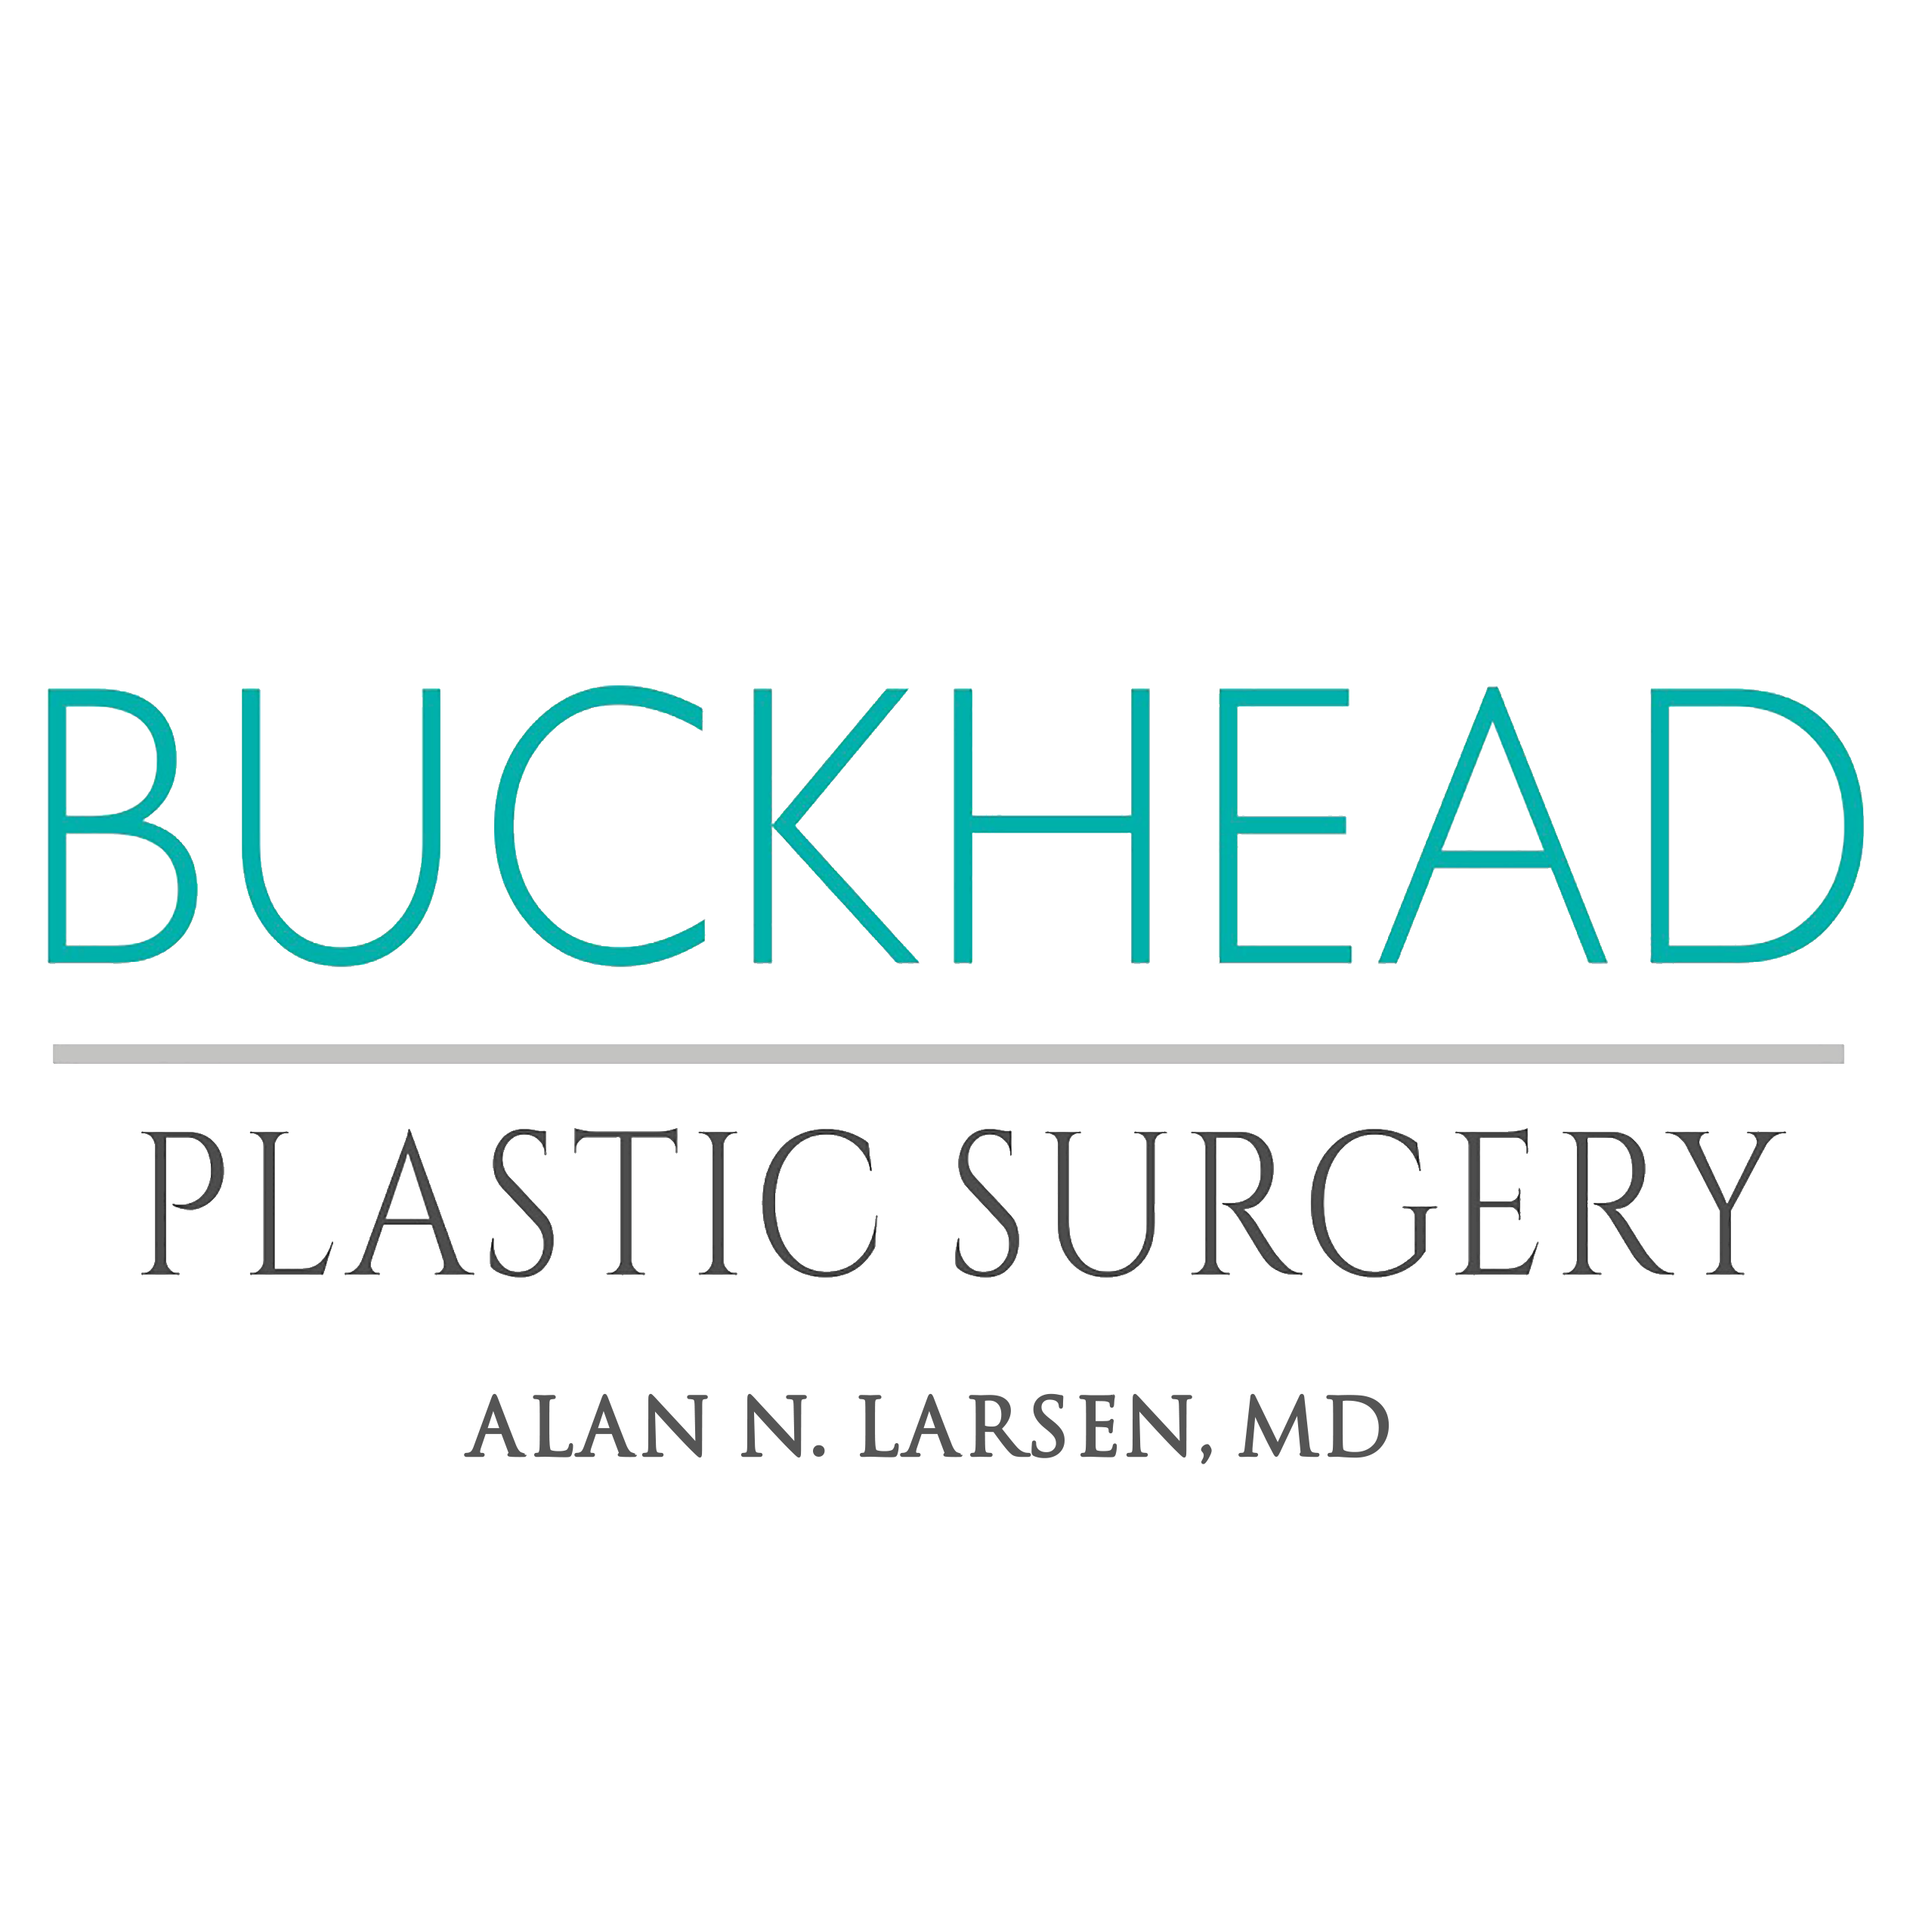 Buckhead Plastic Surgery - Stockbridge